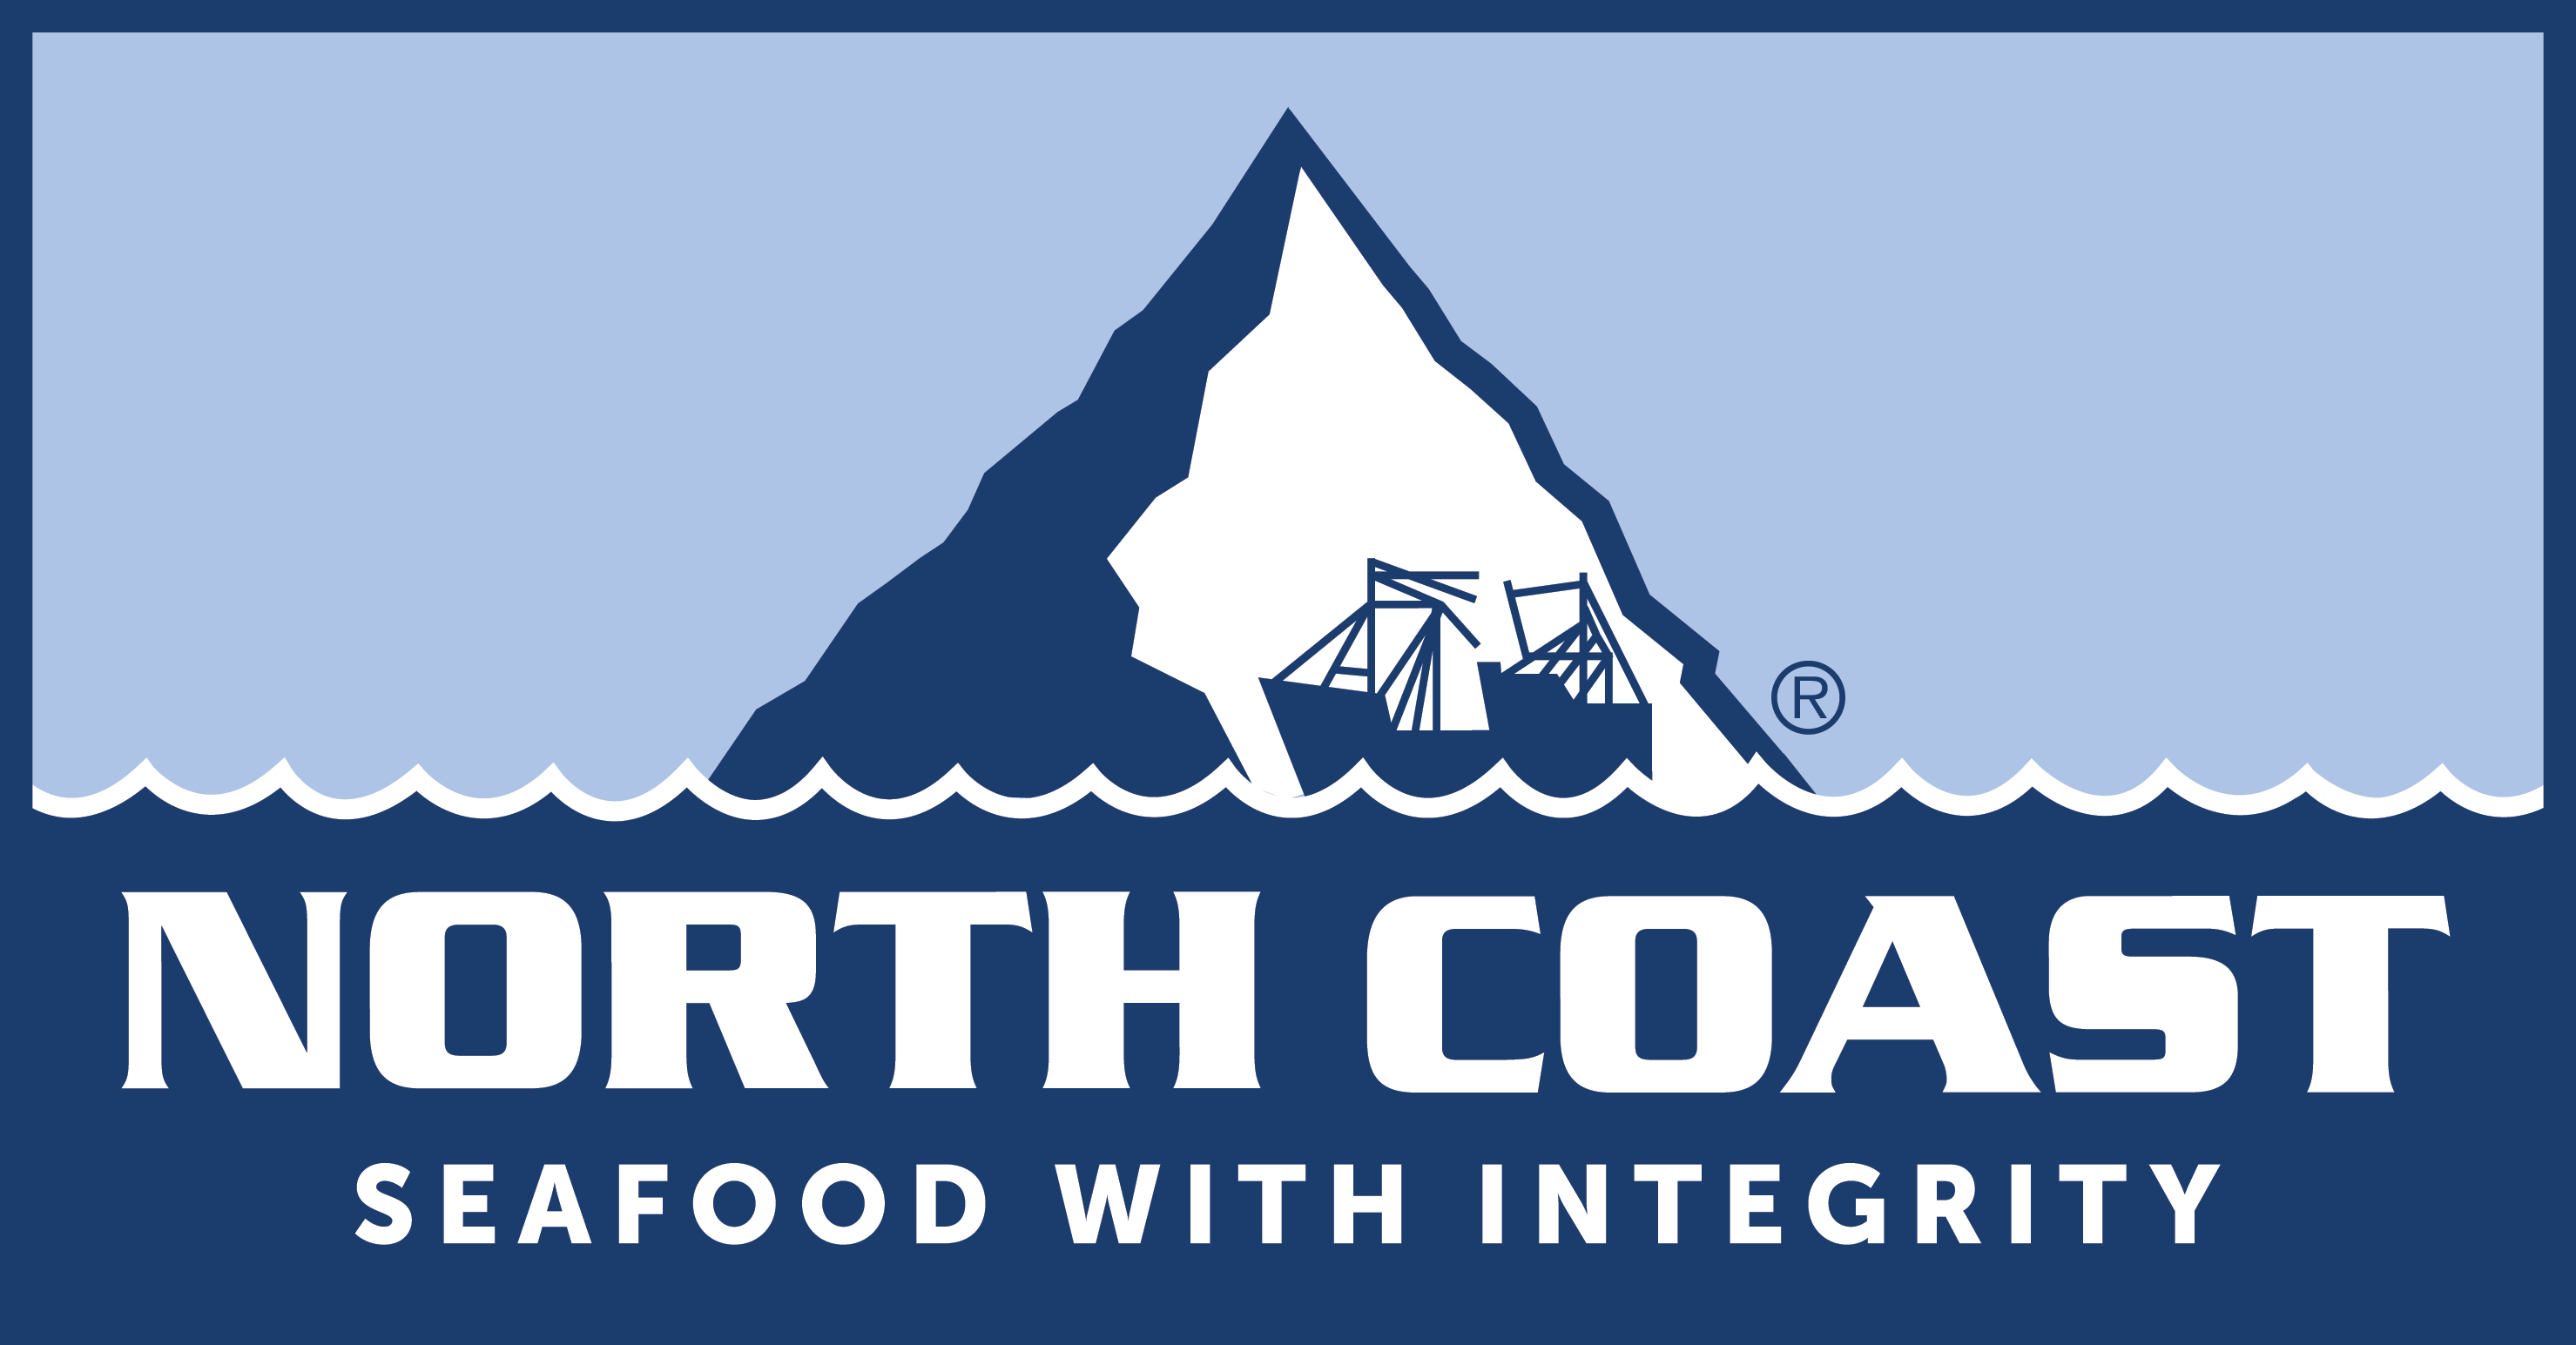 Tredje kontrast meddelelse Wholesale Seafood Online | North Coast Seafoods